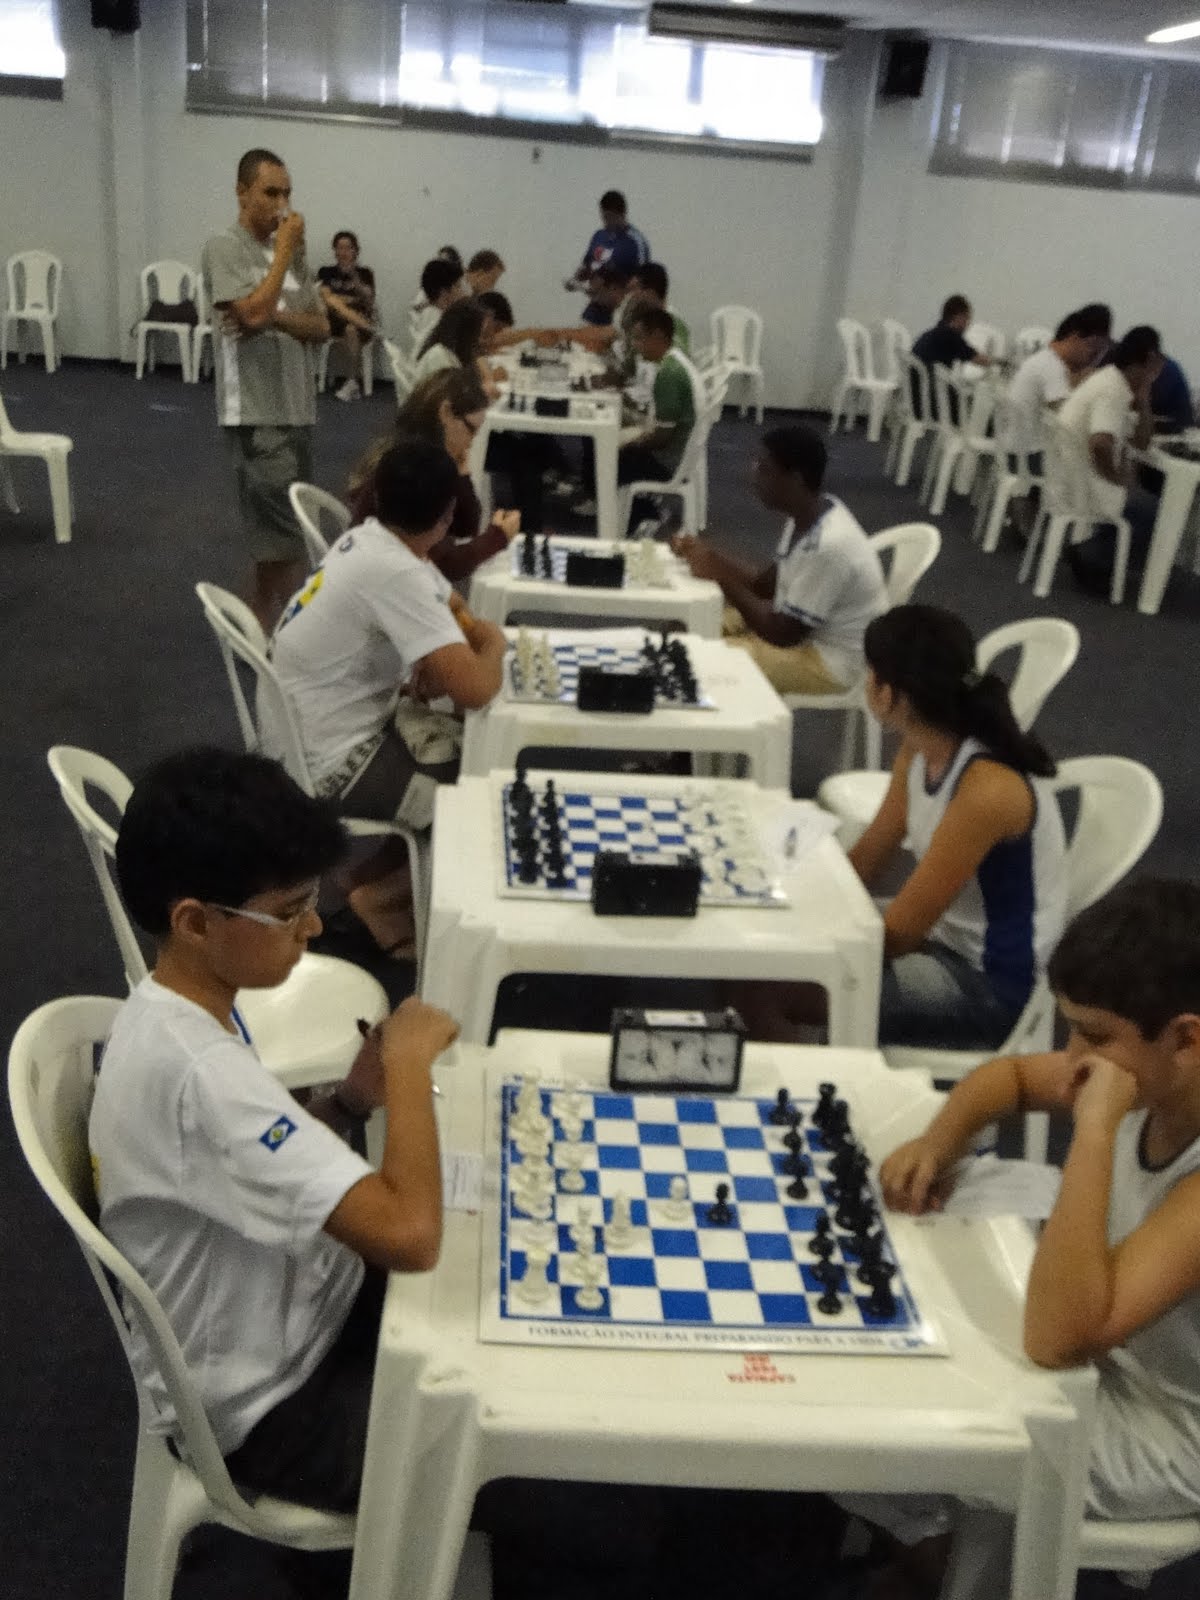 Cuiabá sedia maior torneio de Xadrez da história de MT neste fim de semana  :: Leiagora, Playagora